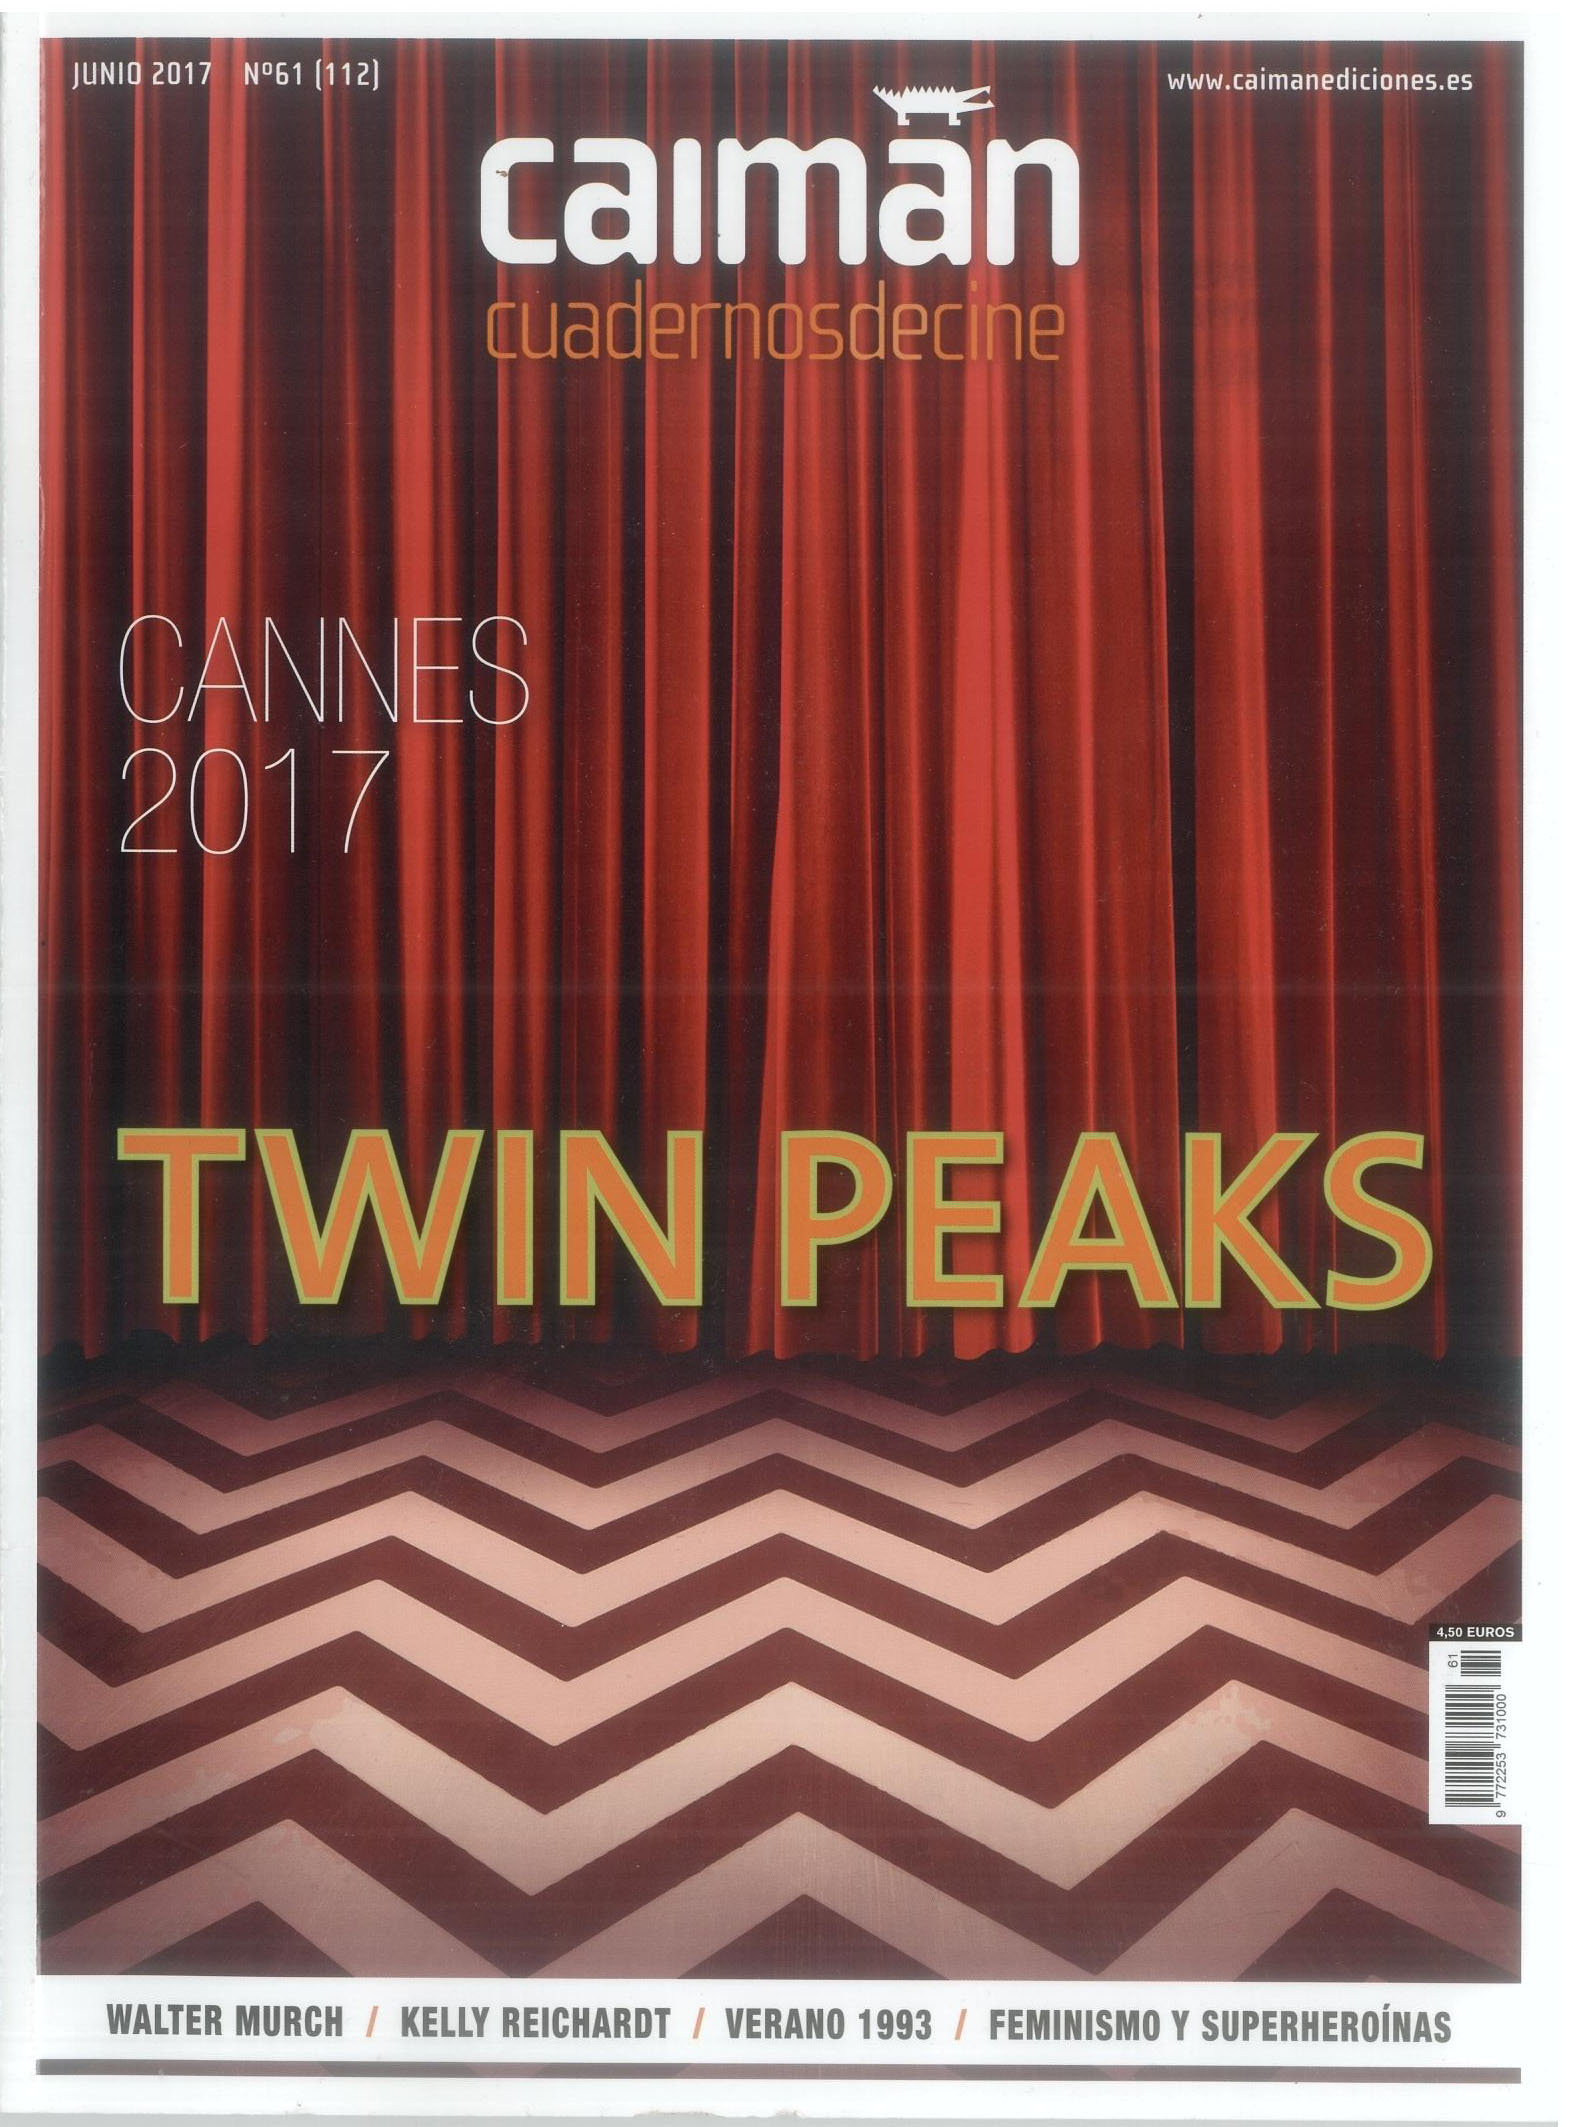 CANNES 2017 en tiempo real - Cannes - Caimán Cuadernos de Cine